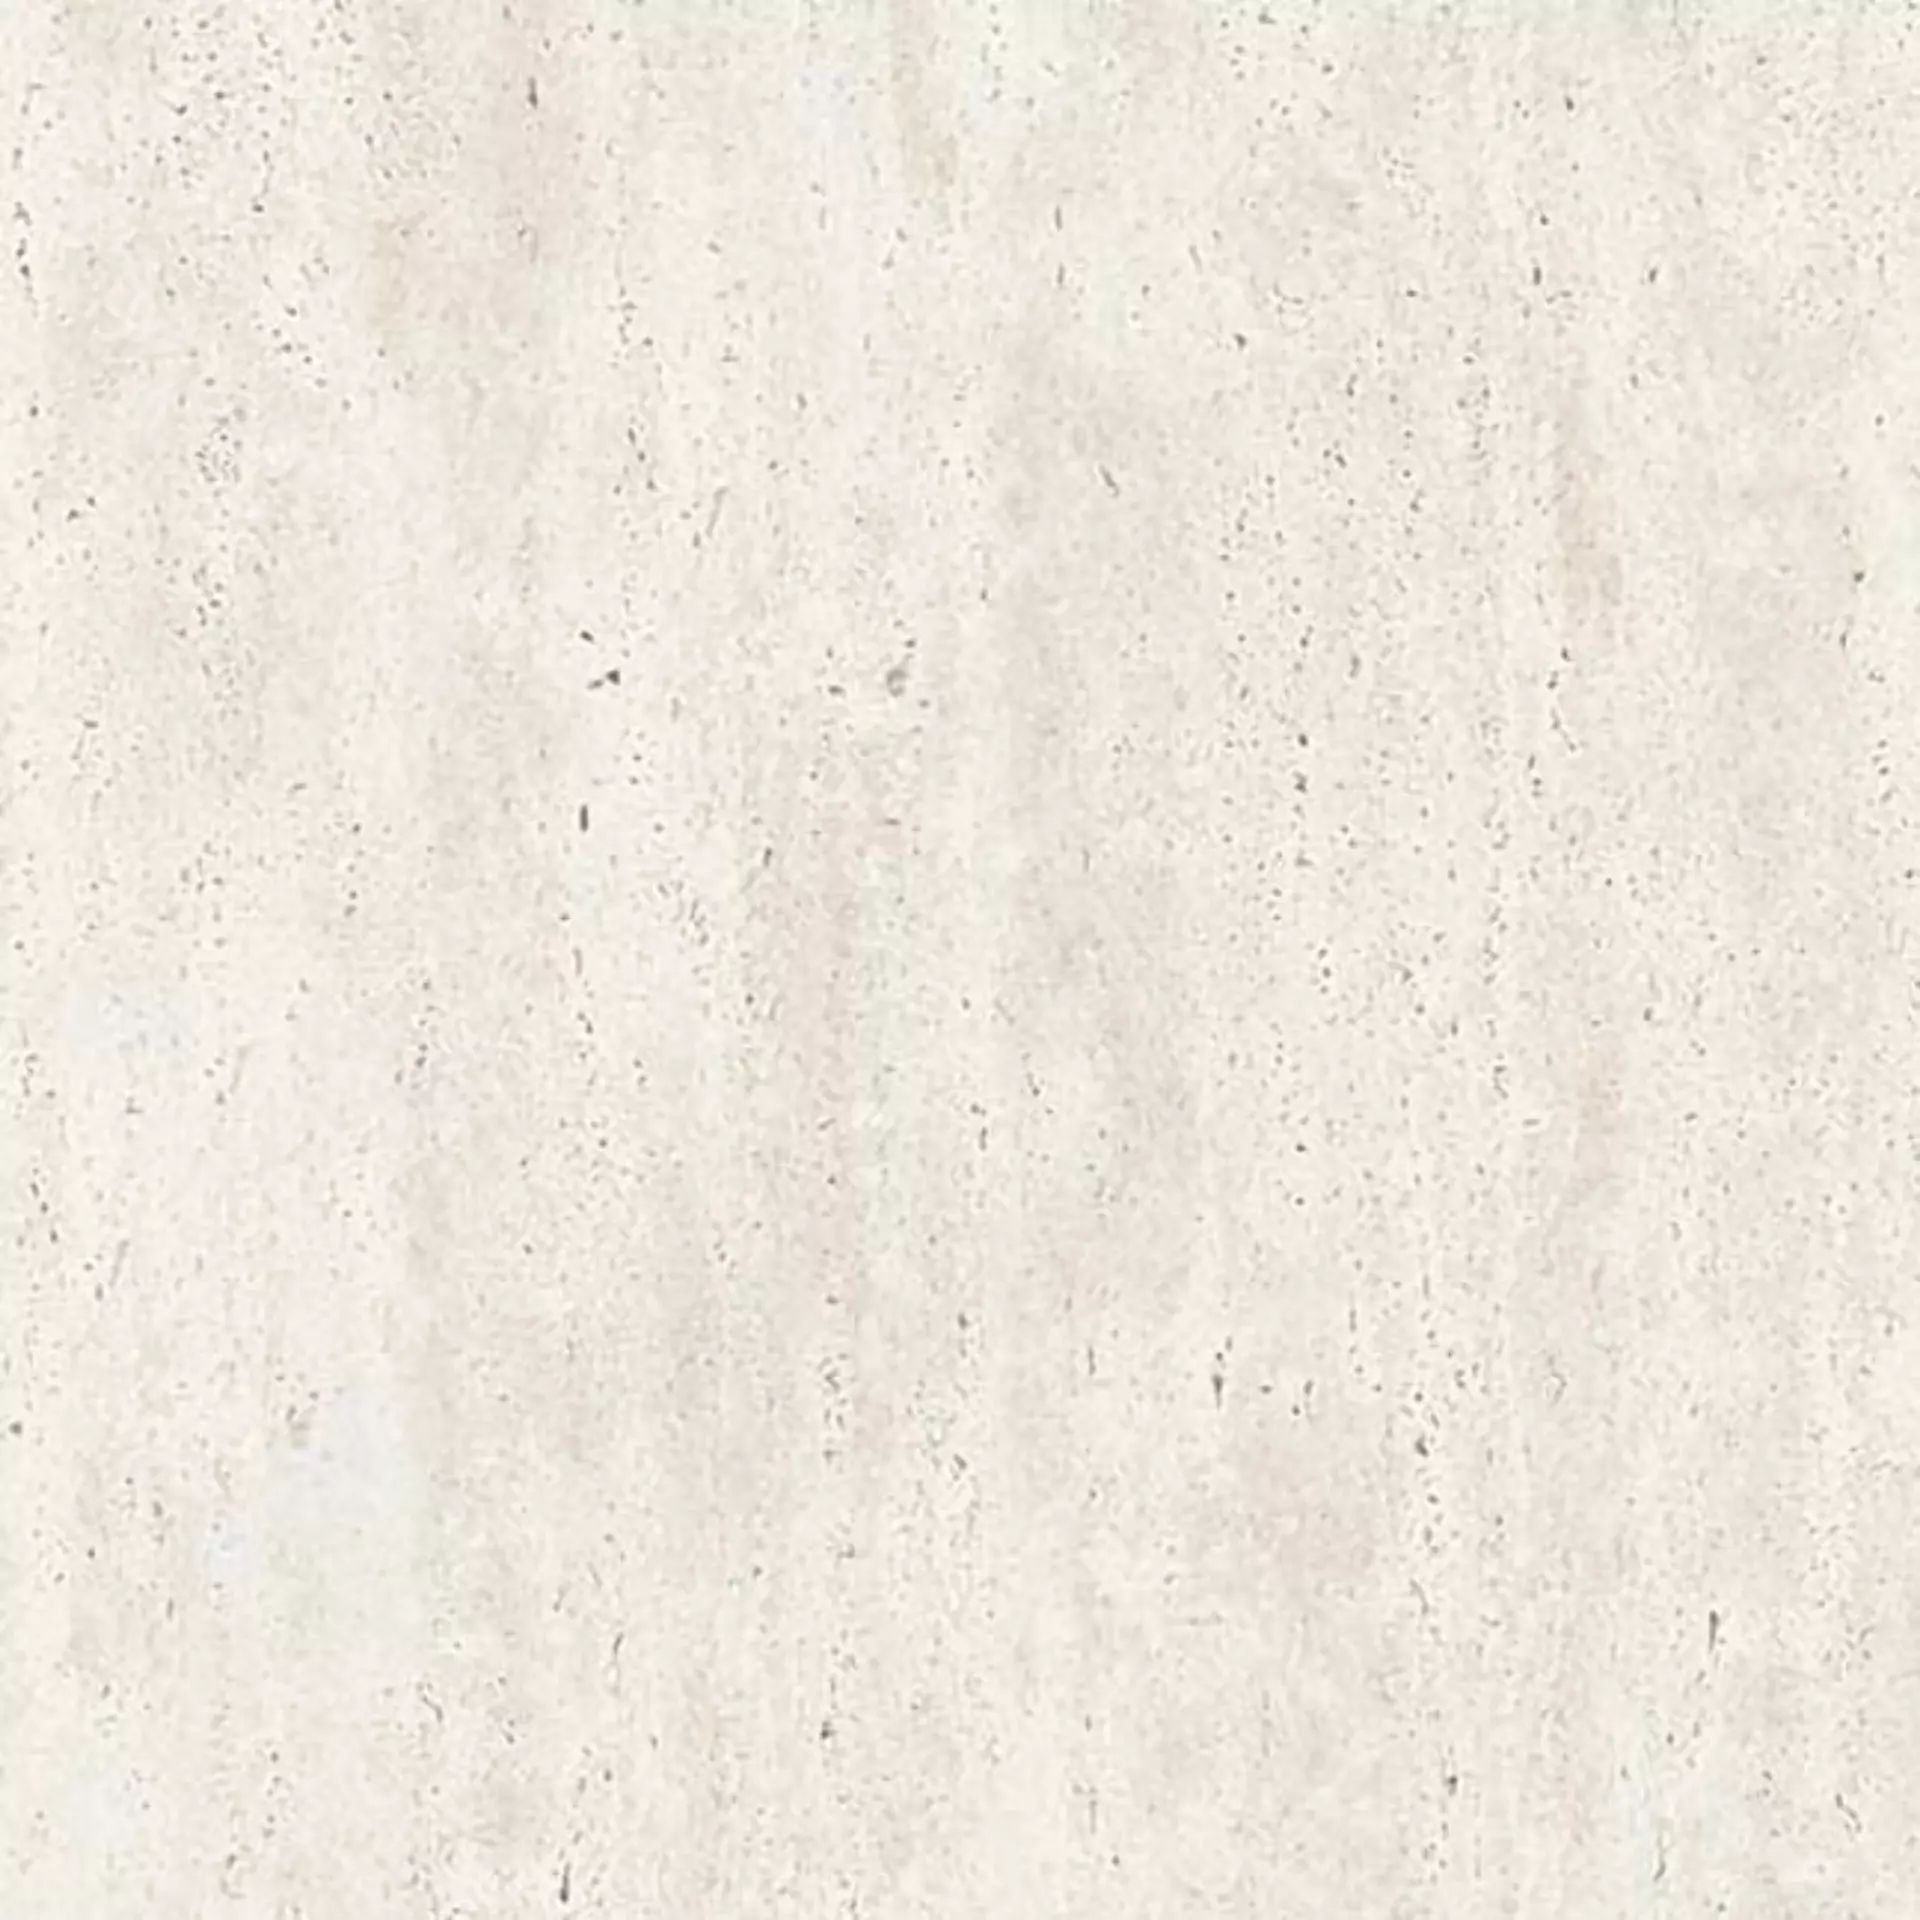 Casalgrande Marmoker Travertino Bianco Naturale – Matt 2950461 60x60cm rectified 10mm